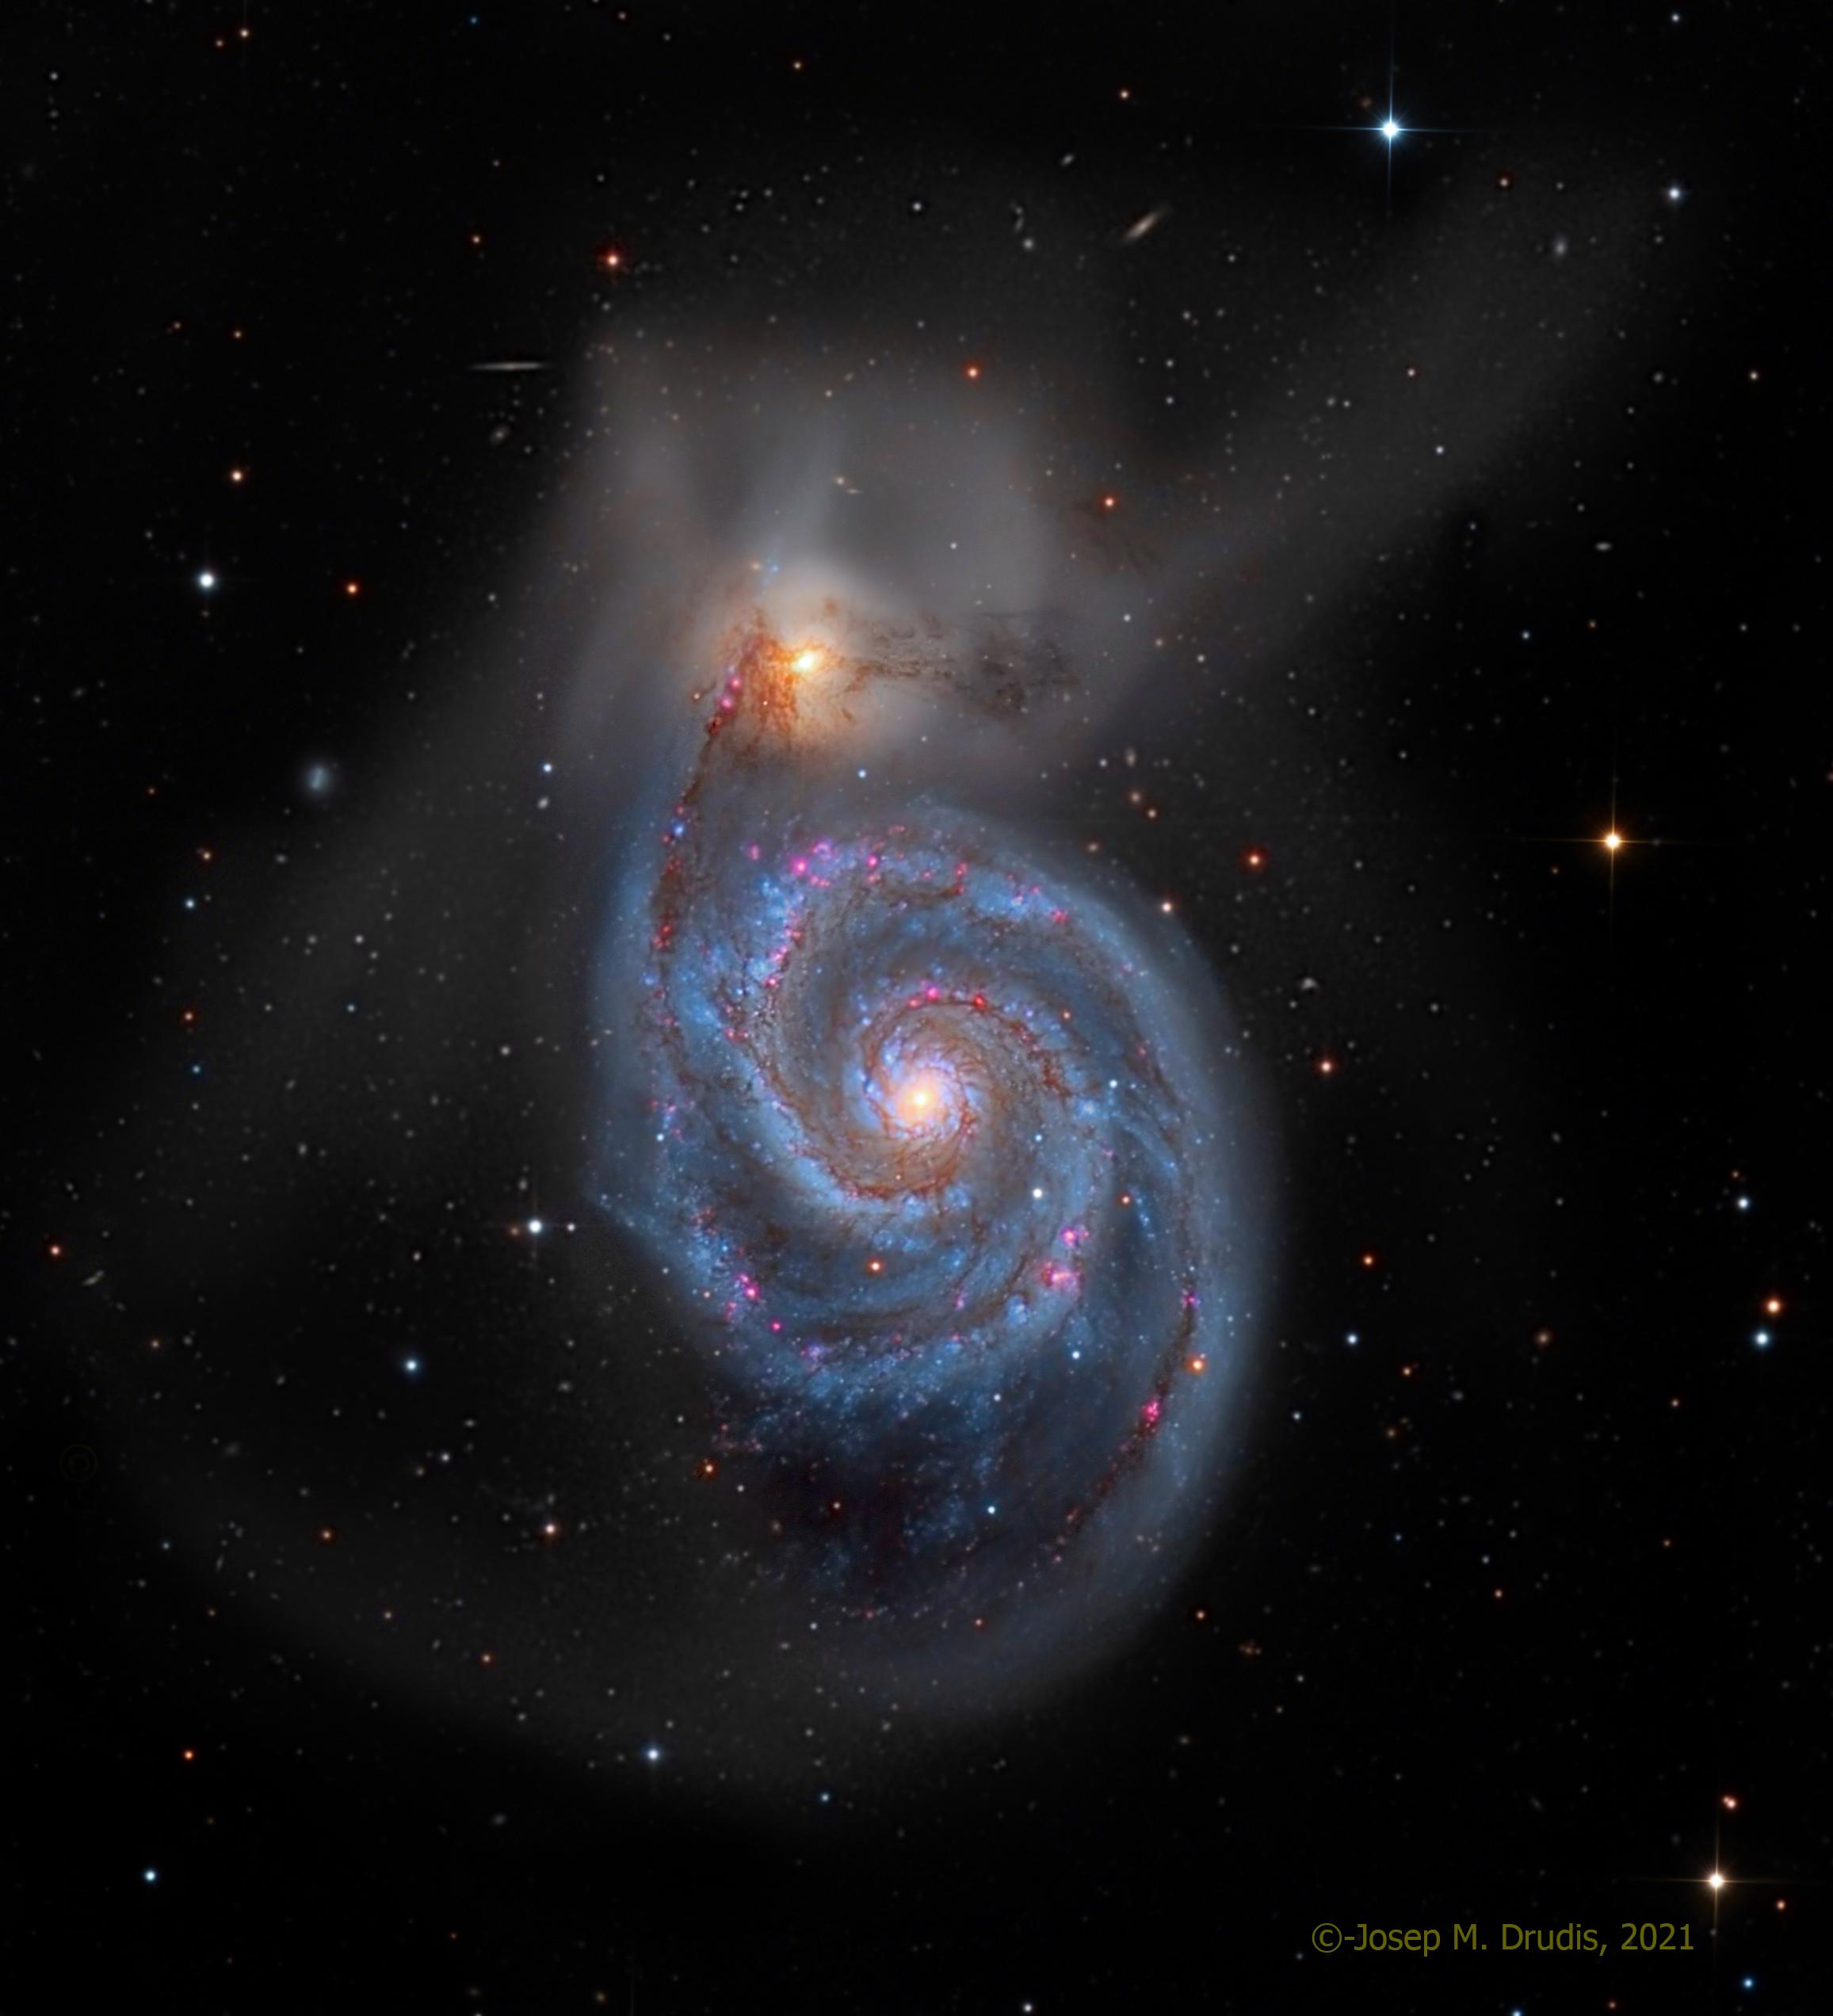 صورة للفضاء العميق تظهر مجرّة حلزونيّة وفي أعلاها مجرّة مصاحبة لها تبدو أصغر حجماً، بينما تتناثر أجرامٌ أخرى حولهما.